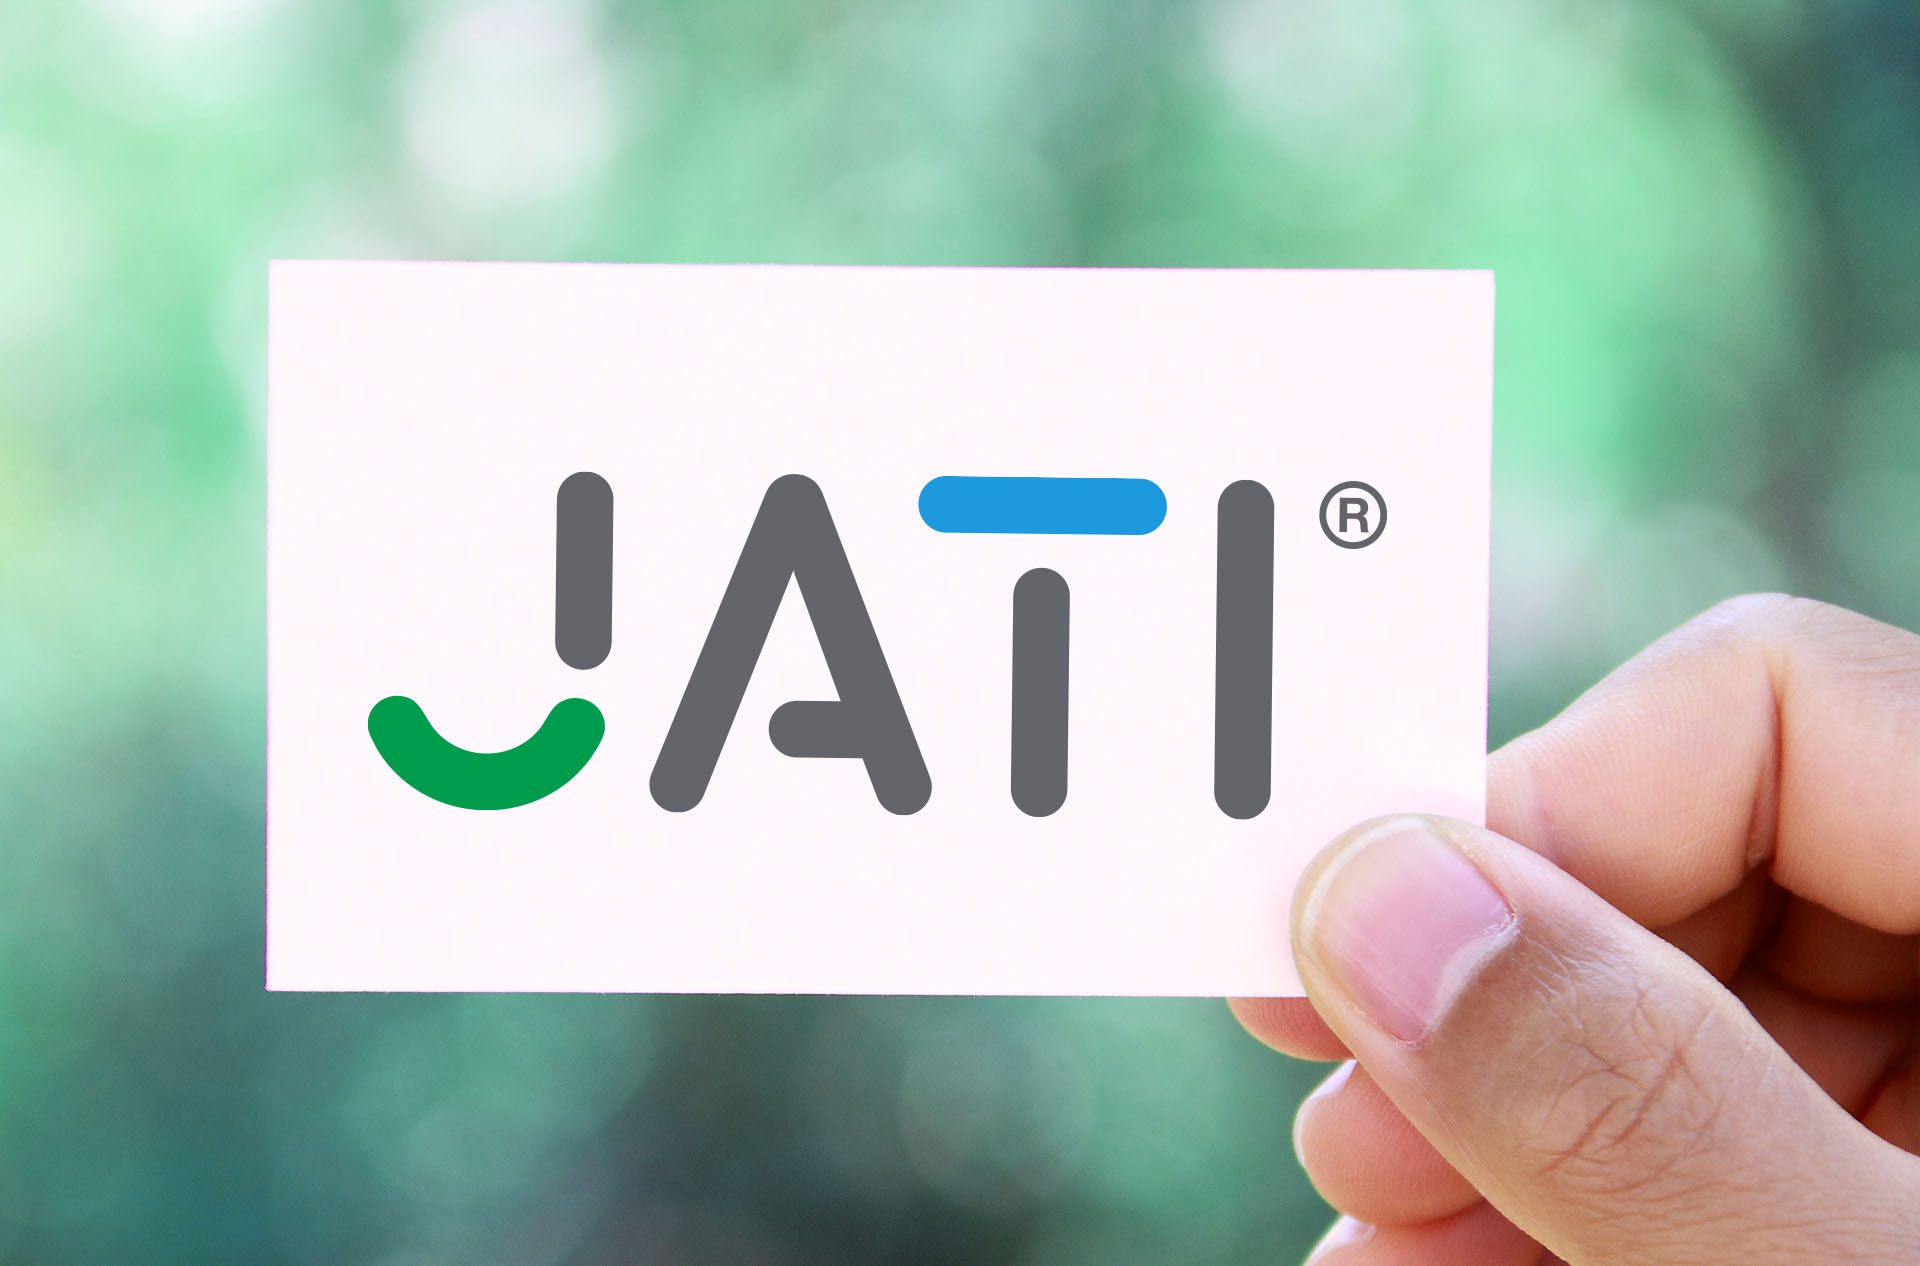 jati logo - Vom schönen Grafik Design zum attraktiven Corporate Design –